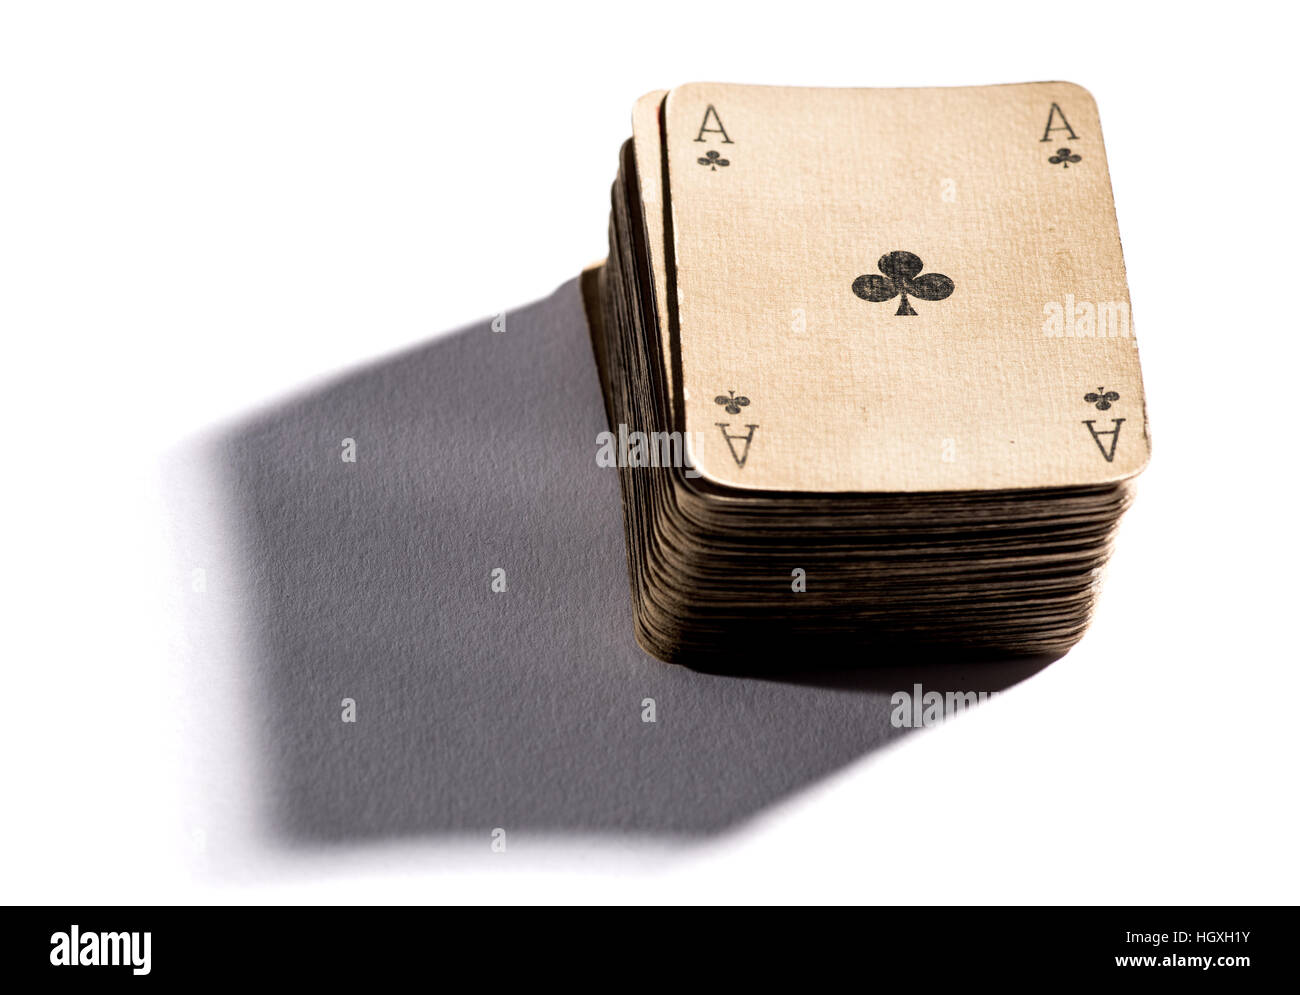 Mazzo di vintage vecchie carte da gioco di sbiadita della carta secca con l'asso del club sulla parte superiore, la caduta di ombra sulla superficie bianca Foto Stock